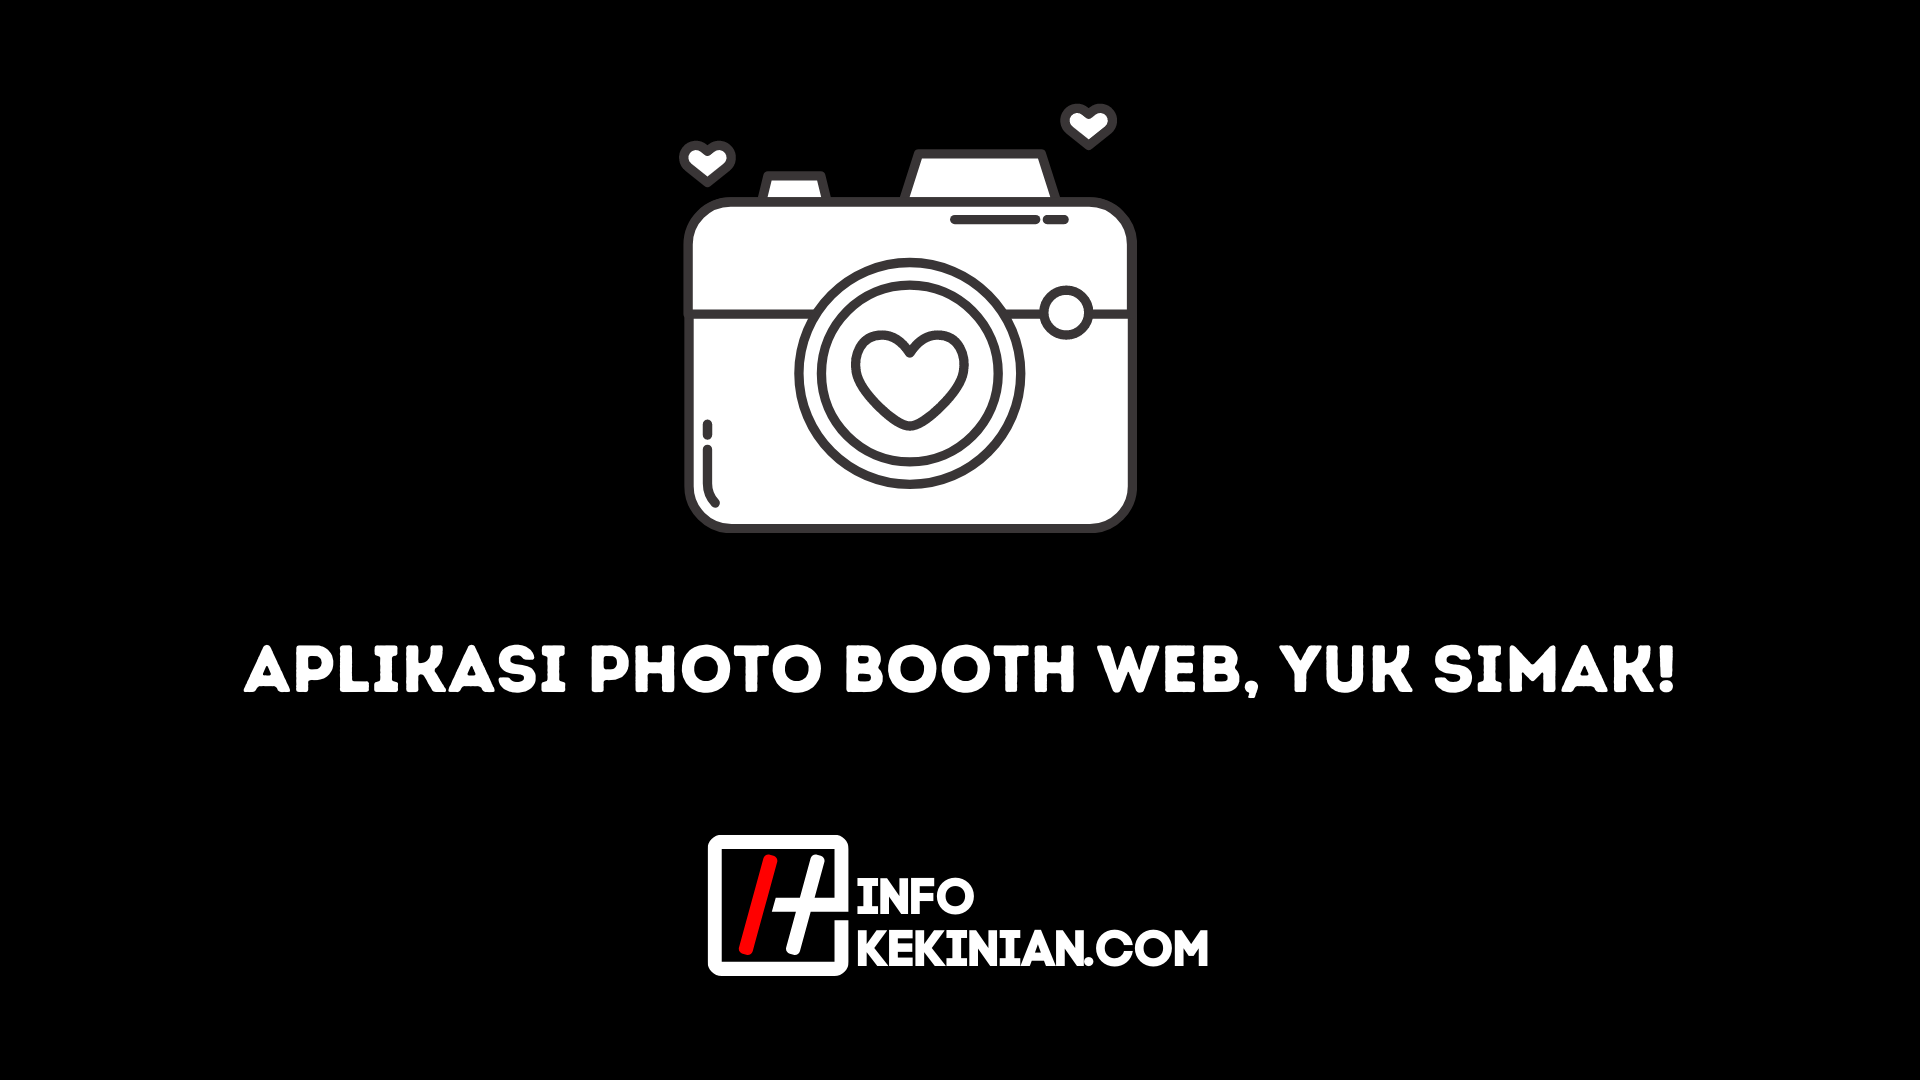 Aplikasi Photo Booth Web, Yuk Simak!